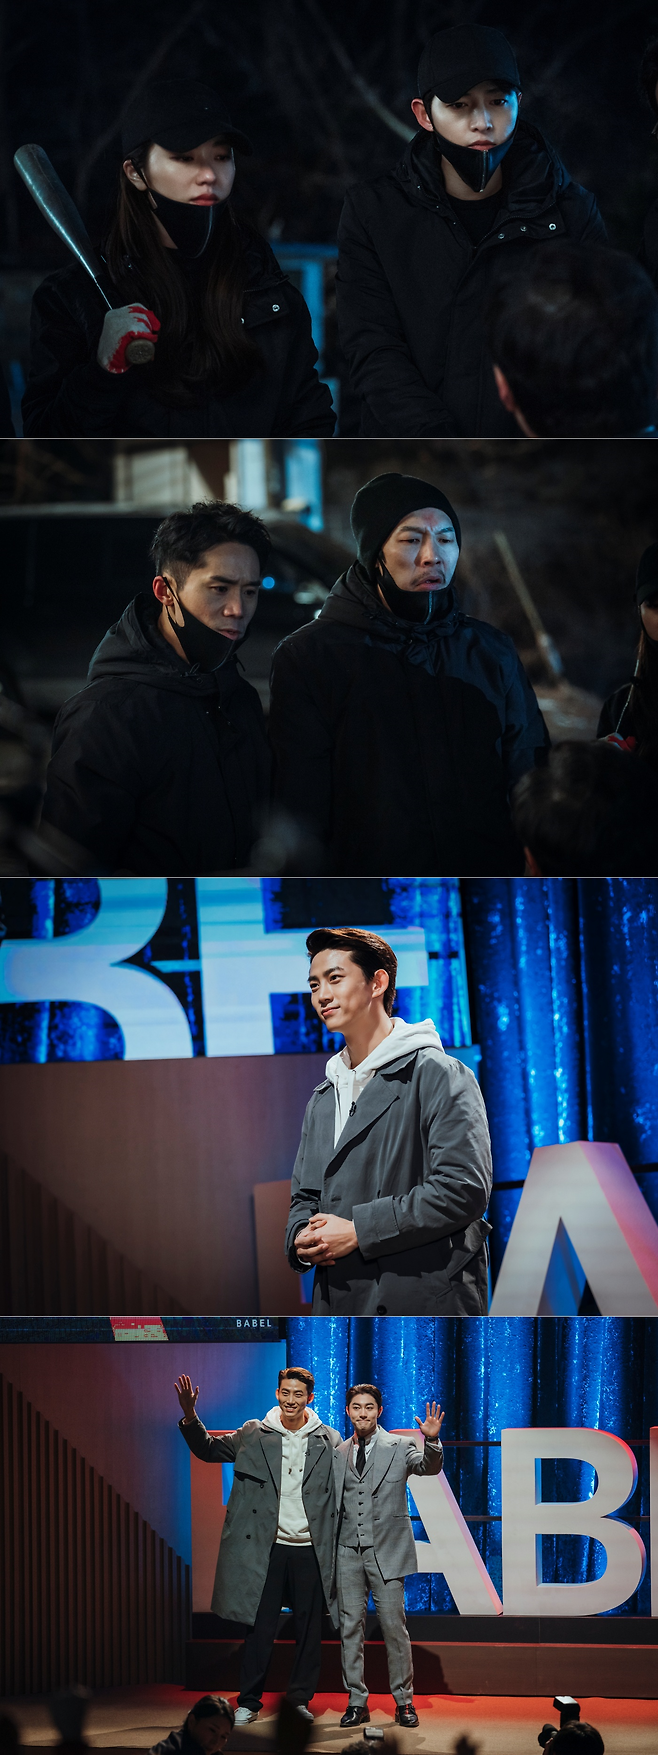 ‘빈센조’ 다크 히어로와 빌런의 치열한 승부가 펼쳐진다.사진=tvN 제공